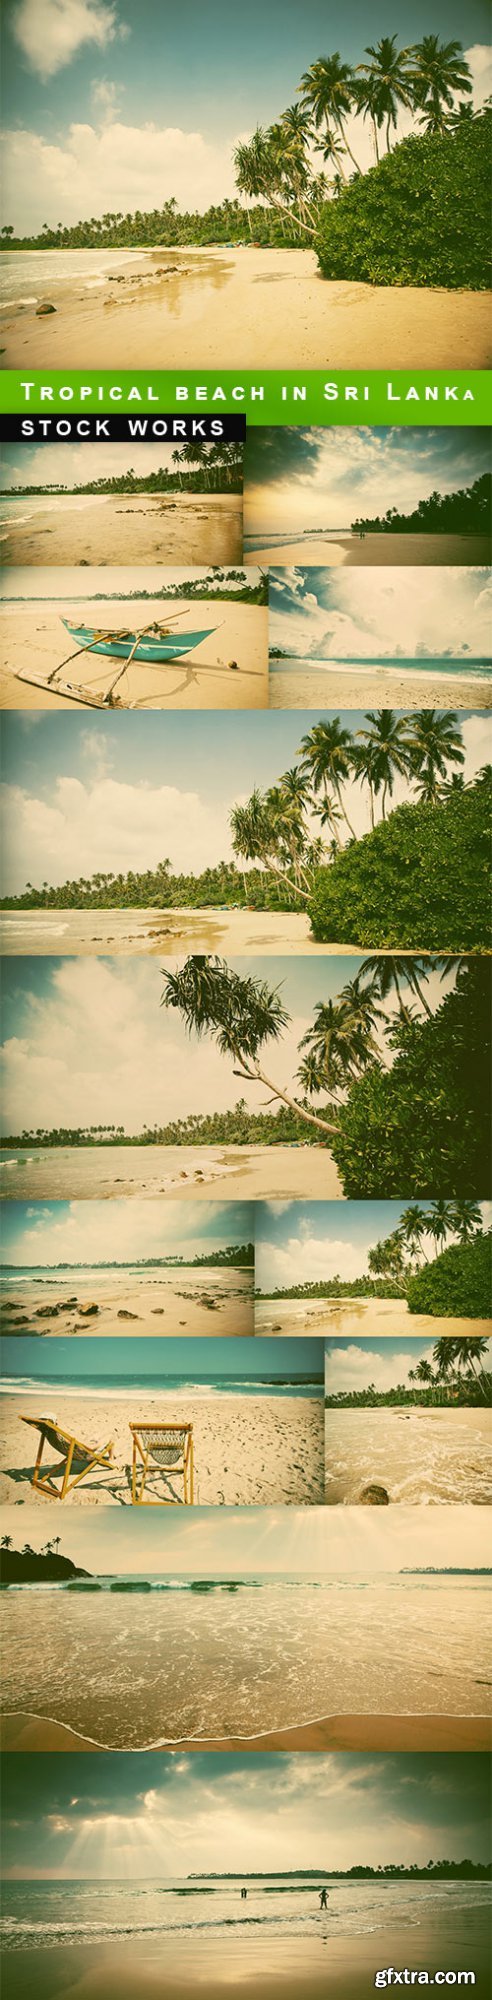 Tropical beach in Sri Lanka - 12 UHQ JPEG